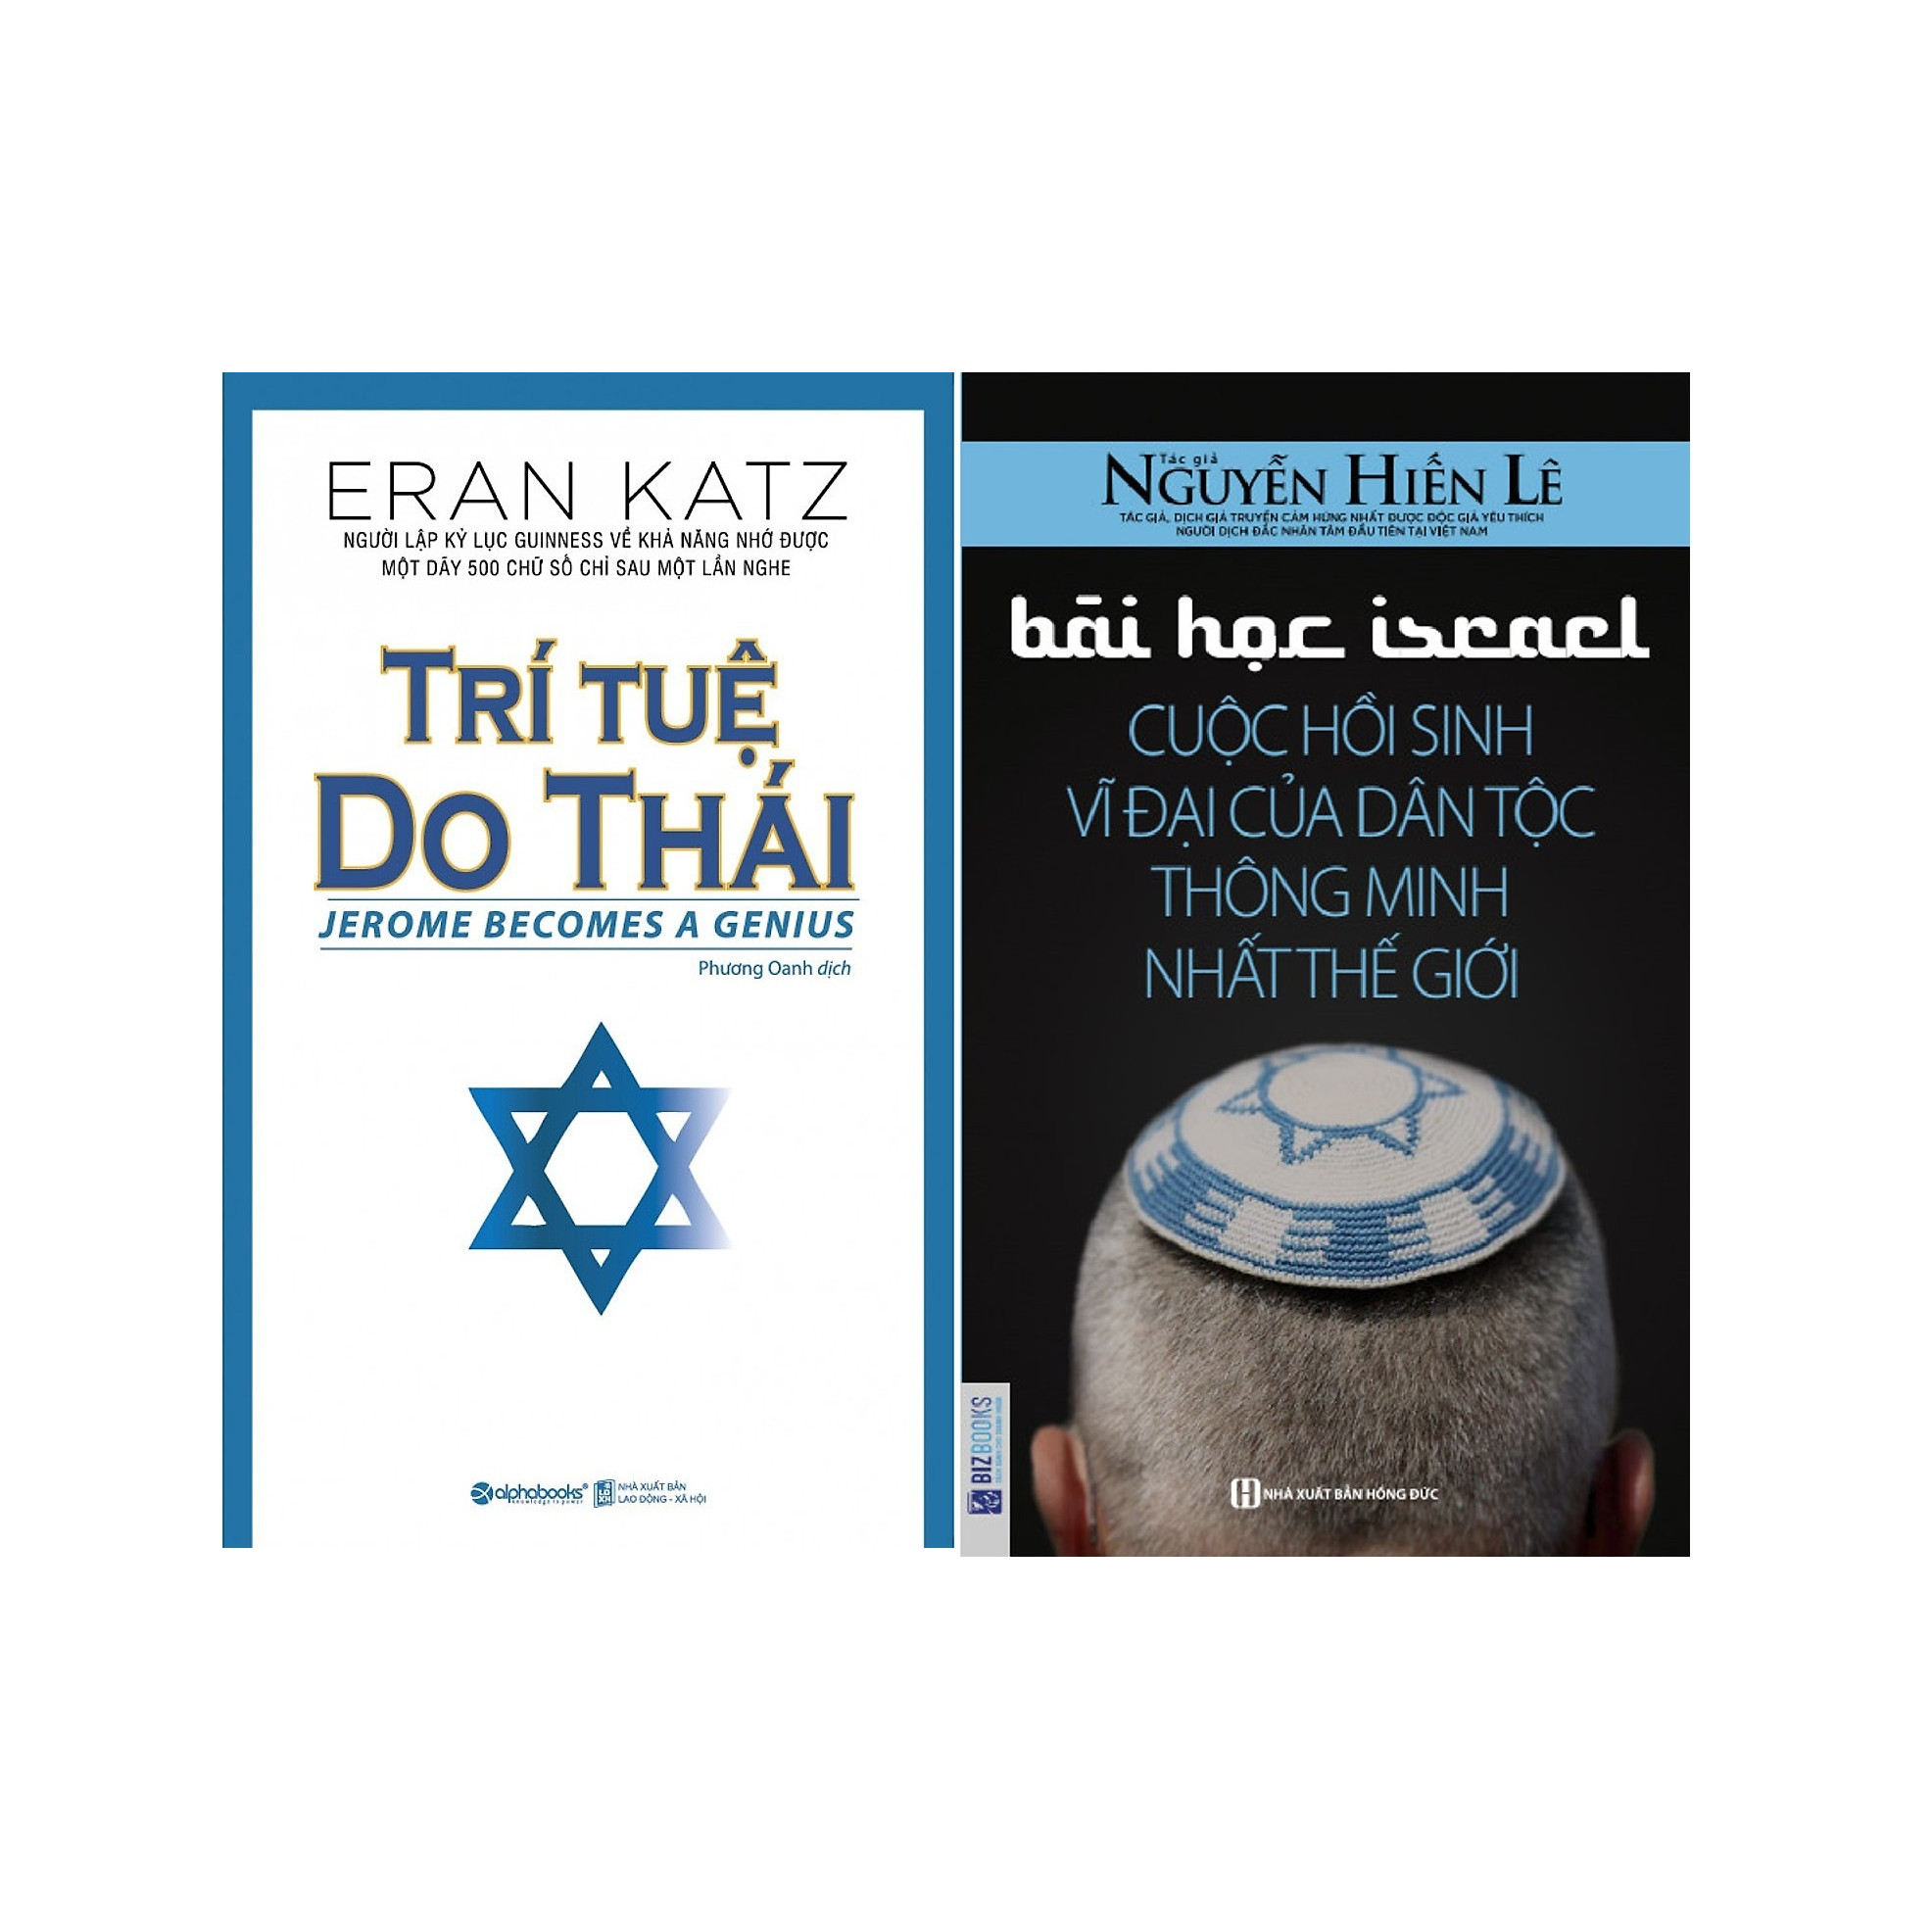 Bộ Sách Bí Mật Dân Tộc Do Thái ( Trí Tuệ Do Thái + Bài Học Israel - Cuộc Hồi Sinh Vĩ Đại Của Dân Tộc Thông Minh Nhất Thế Giới ) Quà Tặng: Cây Viết Galaxy